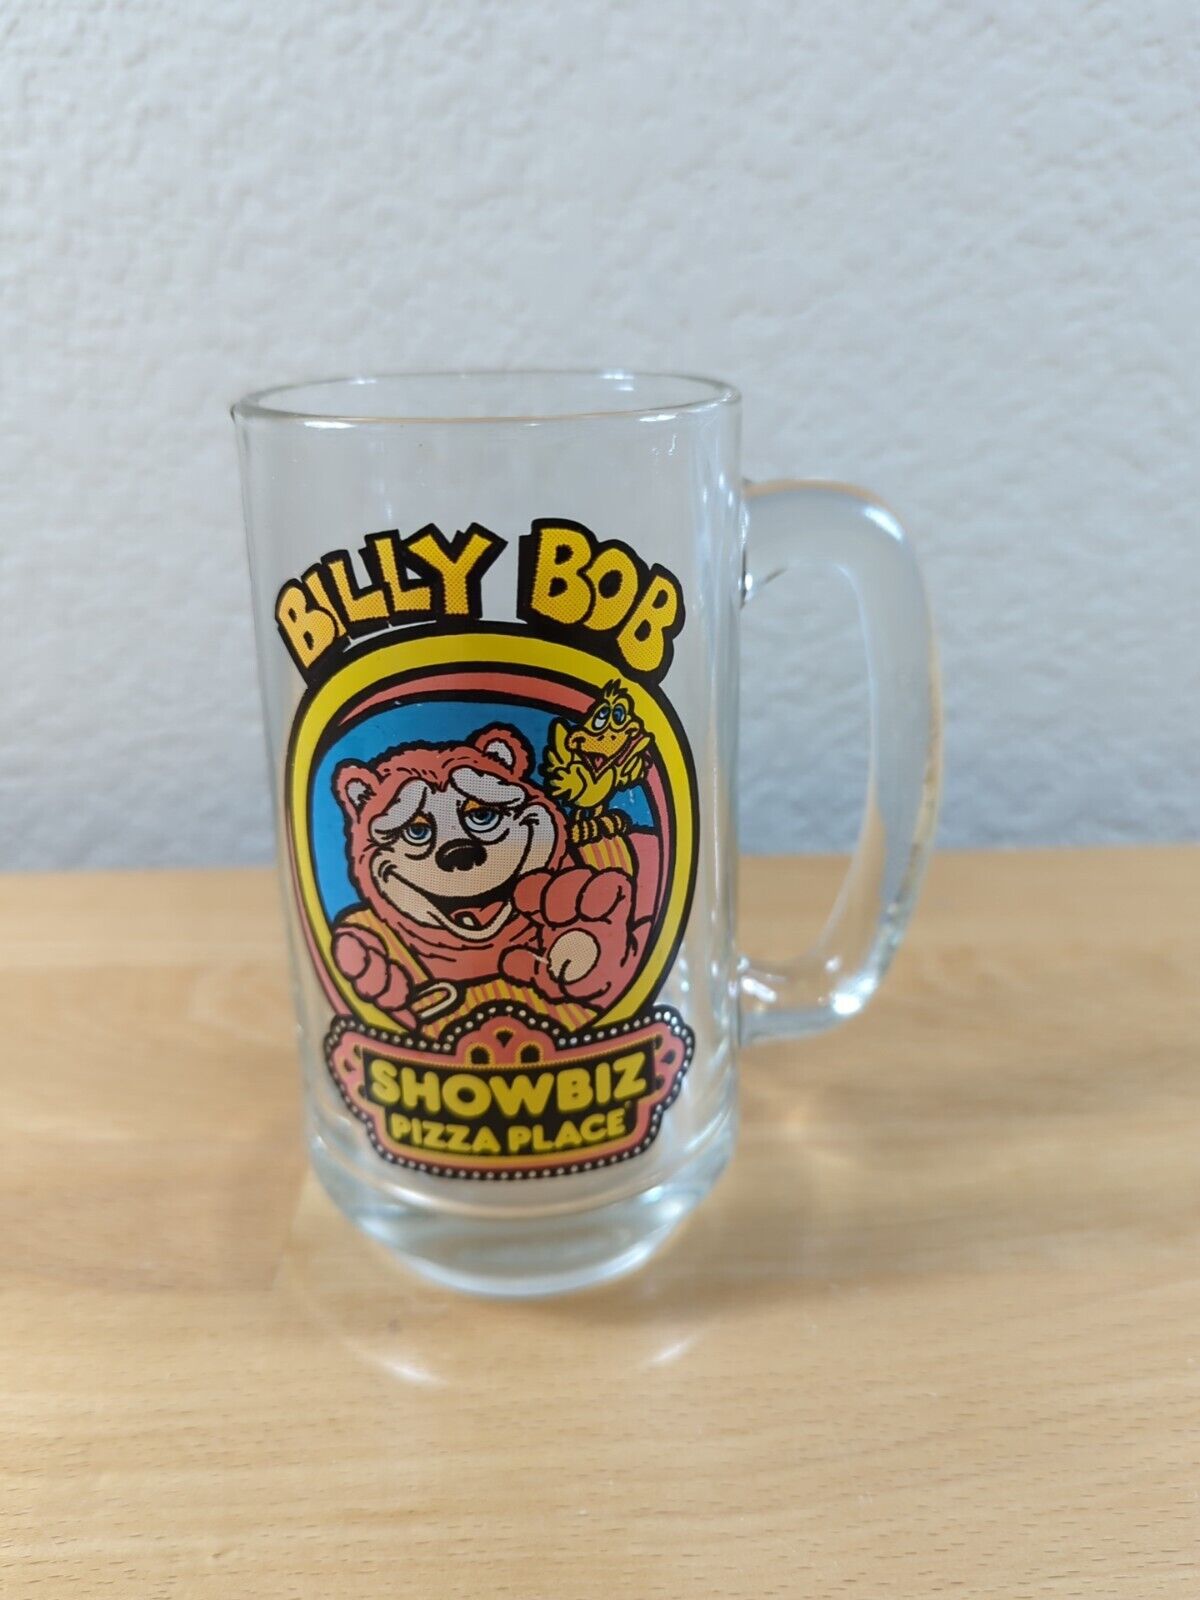 Billy Bob Show Biz Pizza Place Glass Cup Stein Mug W/ Handle 1980s Vintage Retro